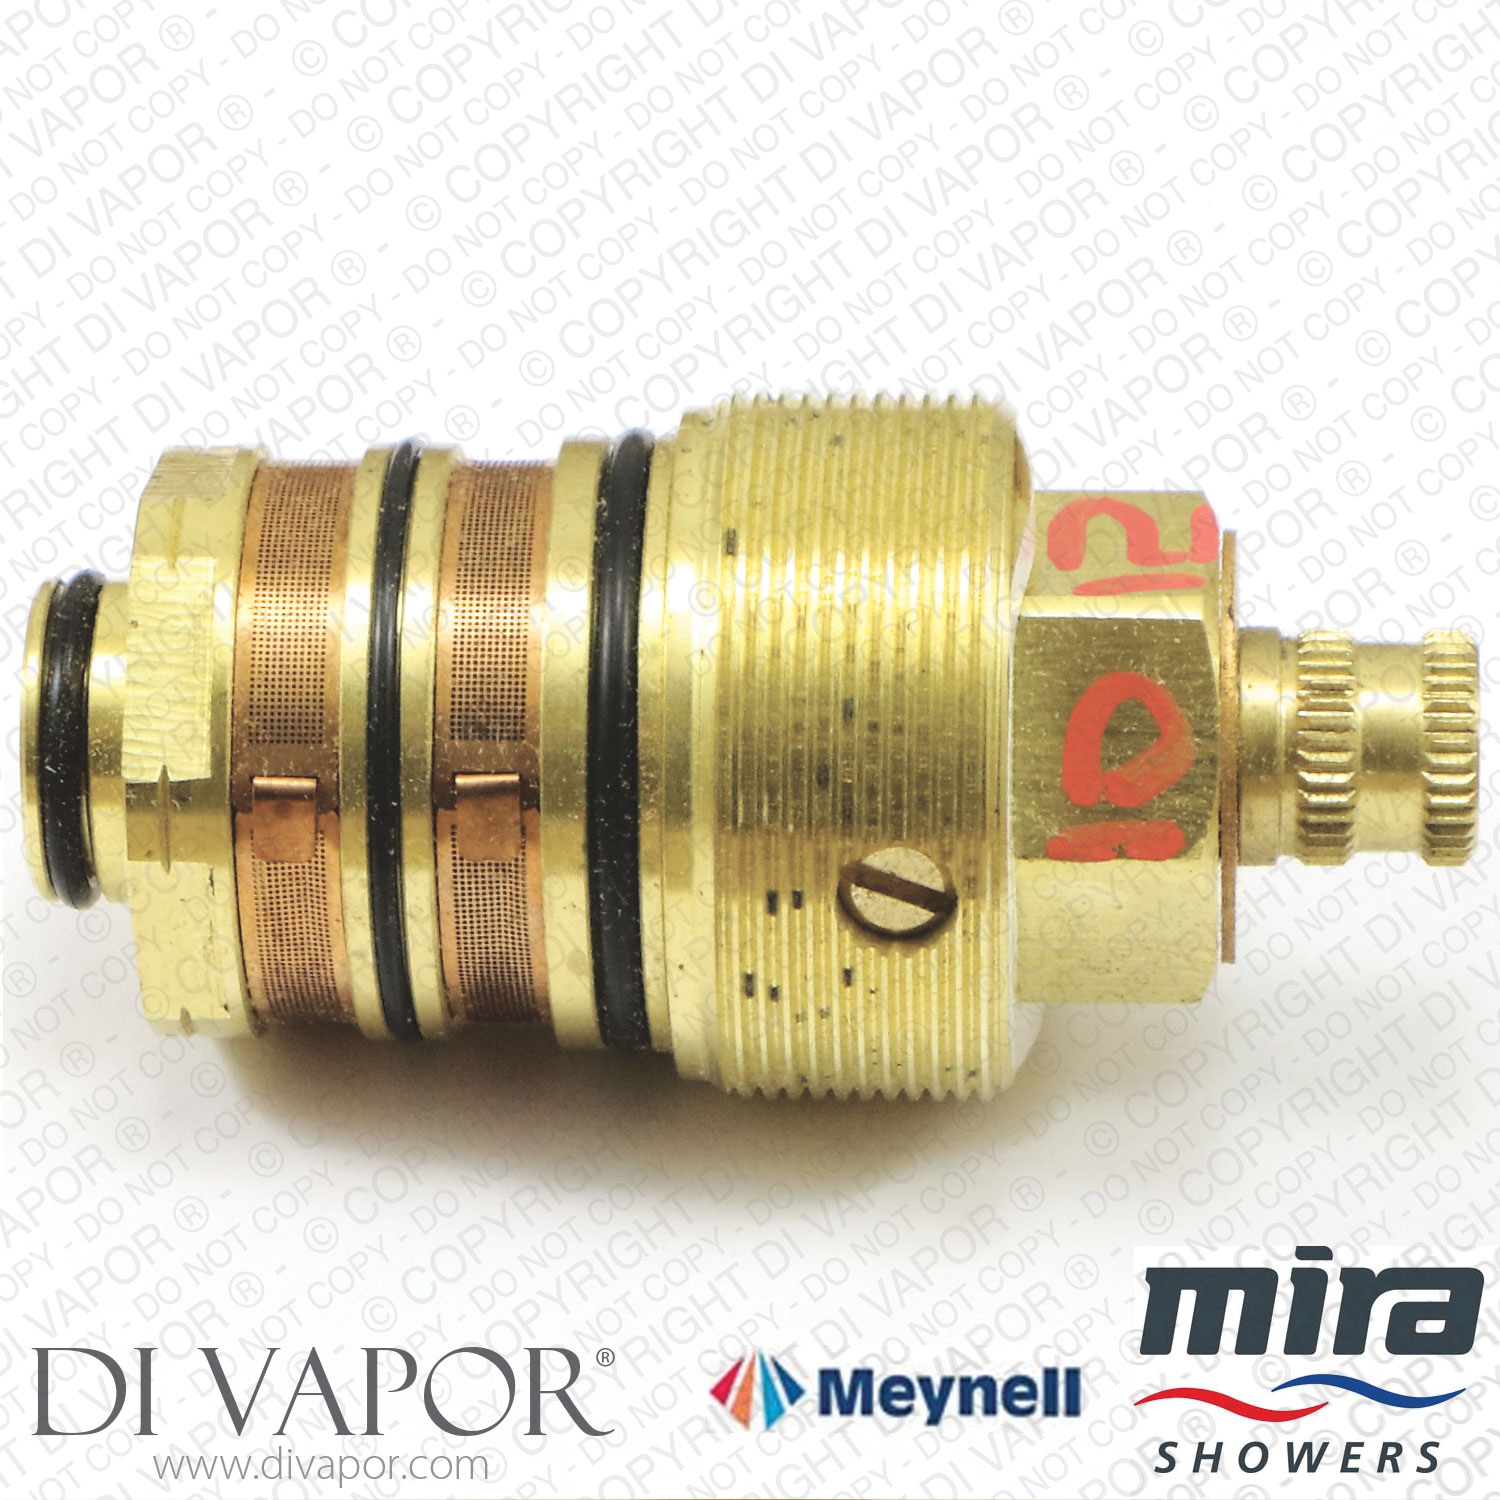 Meynell 1531.058 Mira V8 MoD Sleeve Assy Thermostatic Cartridge (Mira, Rada, Kohler)